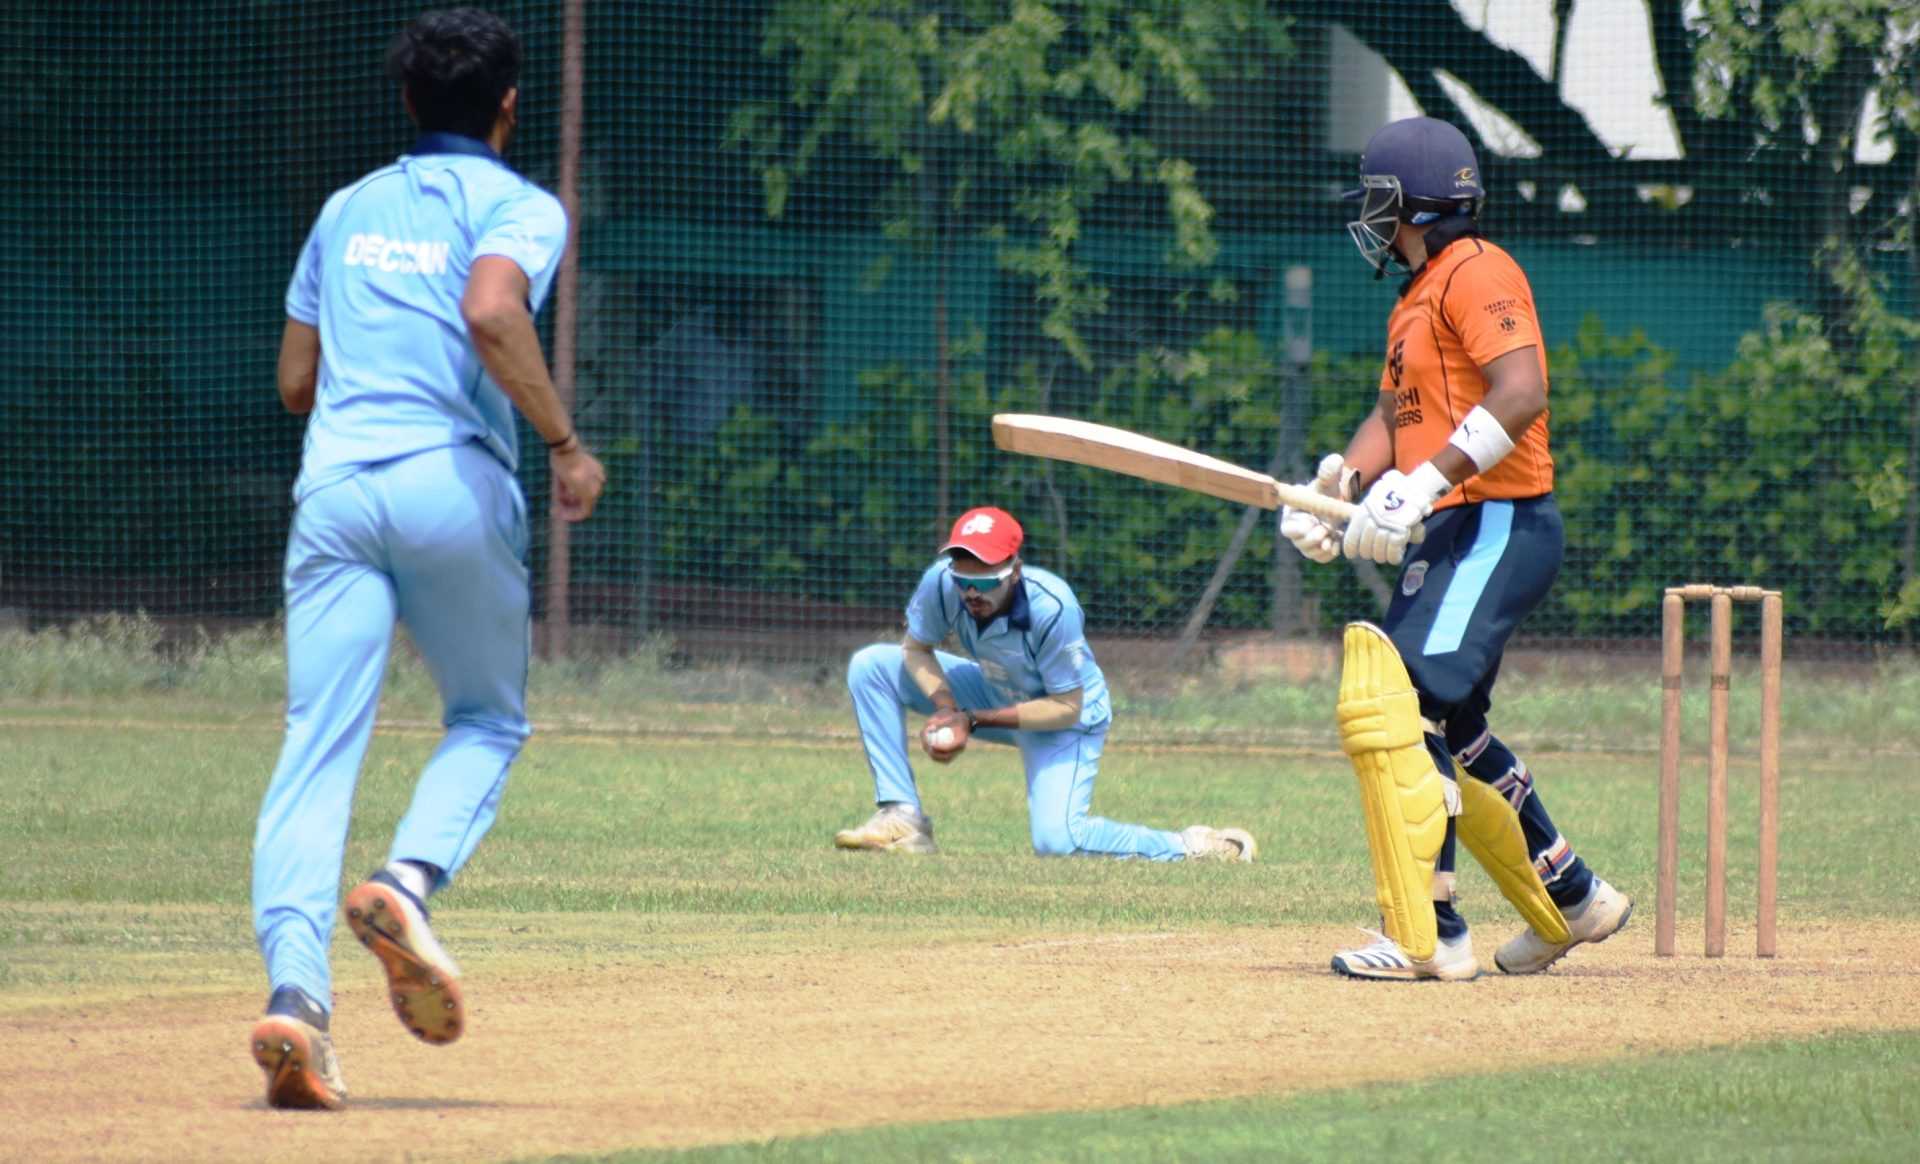 दोशी इंजिनियर्स करंडक आंतरक्लब 25 वर्षांखालील निमंत्रित क्रिकेट स्पर्धेत व्हेरॉक वेंगसरकर क्रिकेट अकादमी संघाचा सलग तिसरा विजय